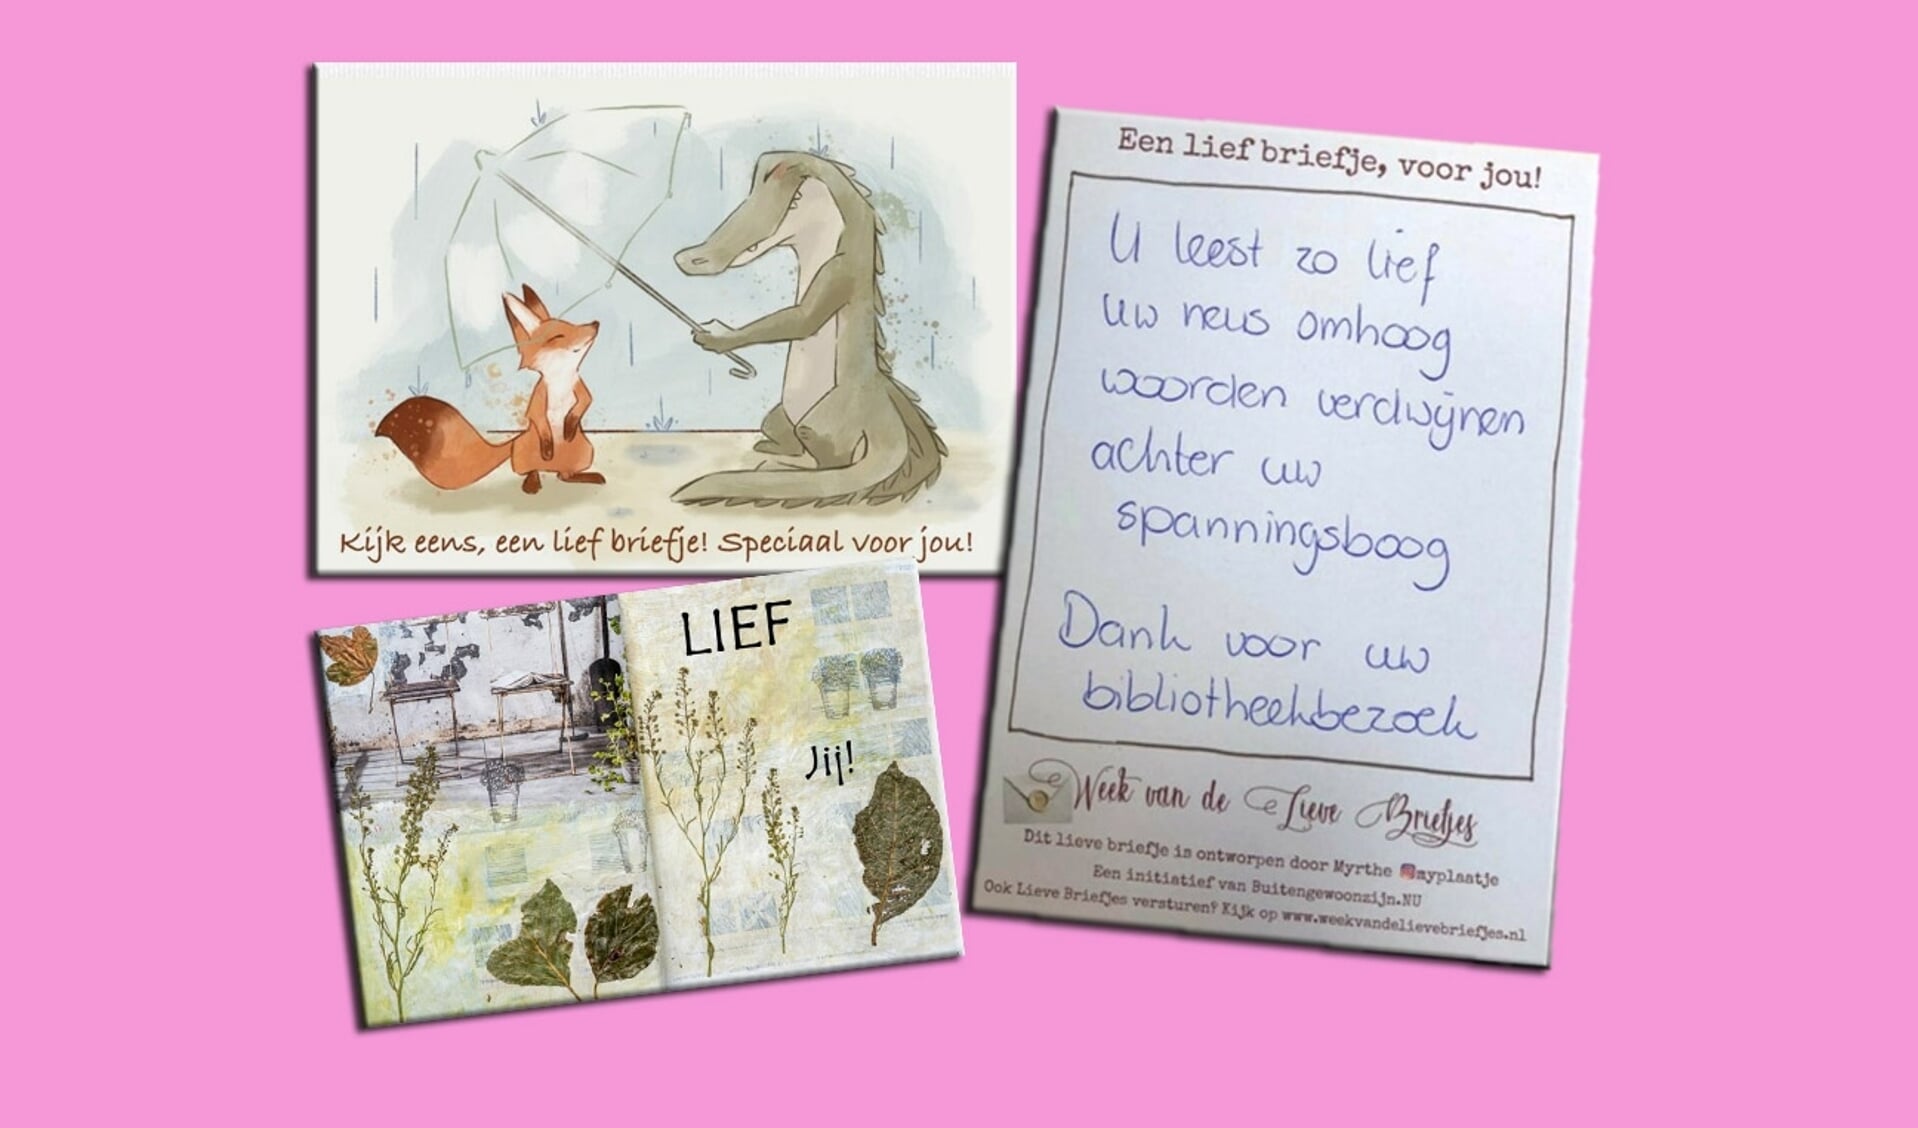 De tekening van de vos en krokodil is van Autumn van Grol, het herfstontwerp is van Janet Baas.   